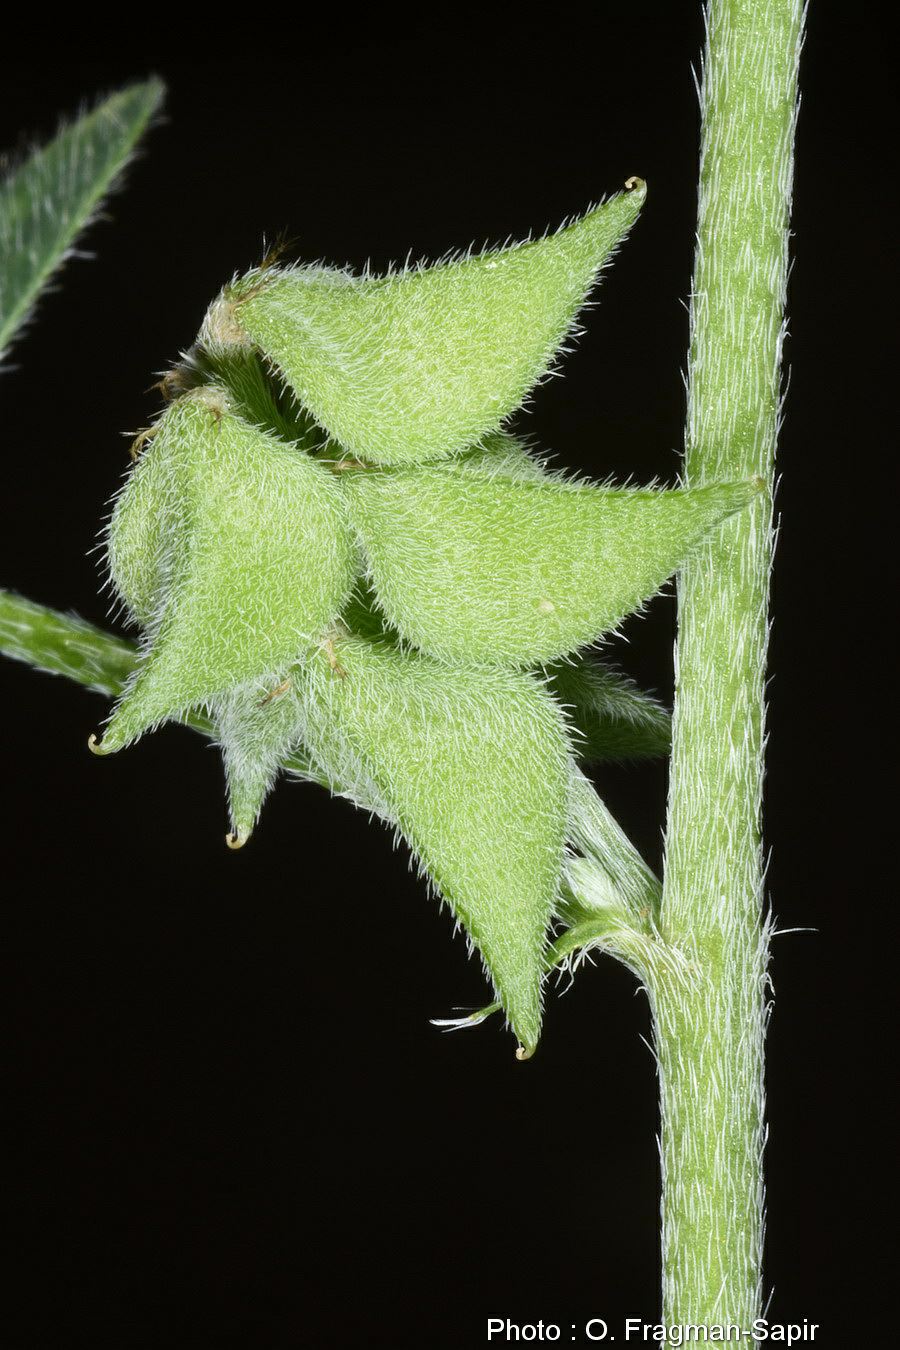 Astragalus epiglottis - Heart-podded Milk-vetch, קדד זעיר, קדד  זעיר